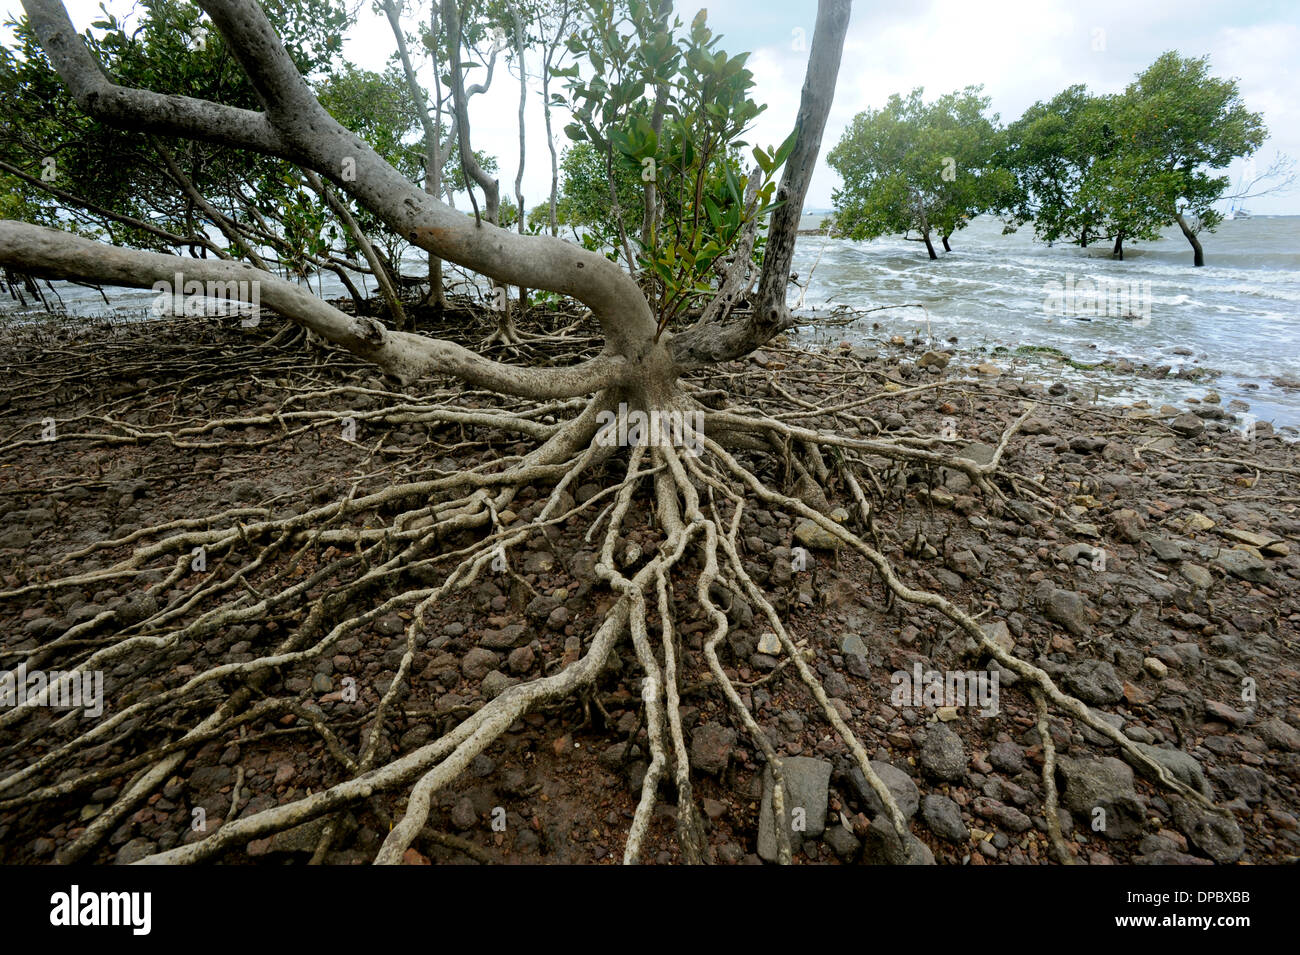 Le radici di mangrovia, si vedono chiaramente al di sopra di una marea crescente in questa immagine ripresa nella baia di Morton Brisbane Australia Foto Stock